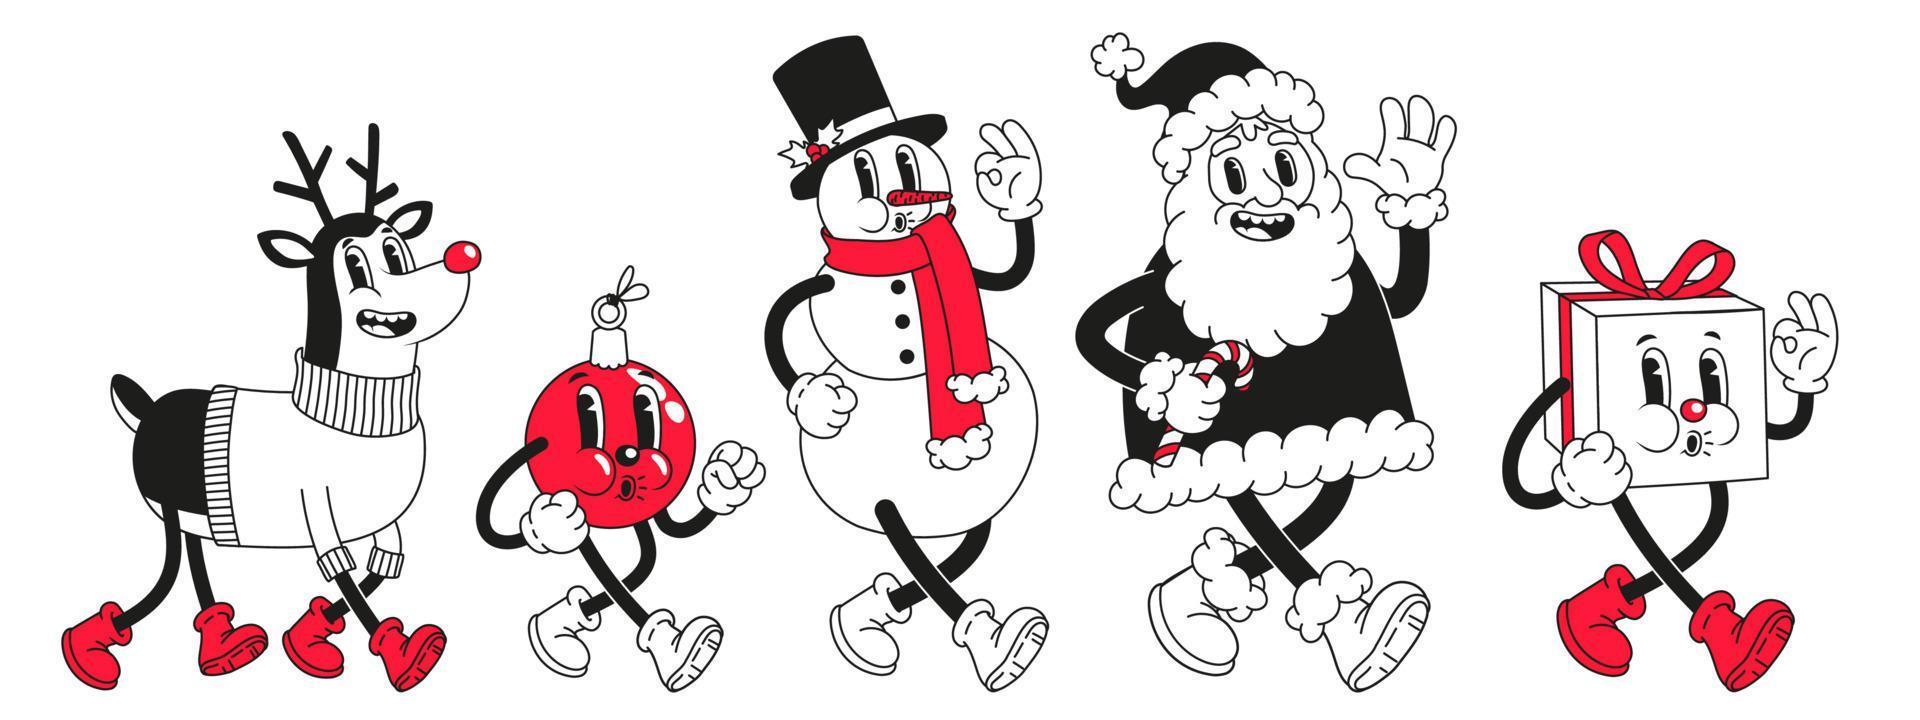 personajes de dibujos animados de navidad. divertido muñeco de nieve, santa claus en estilo de dibujos animados retro de moda. vector